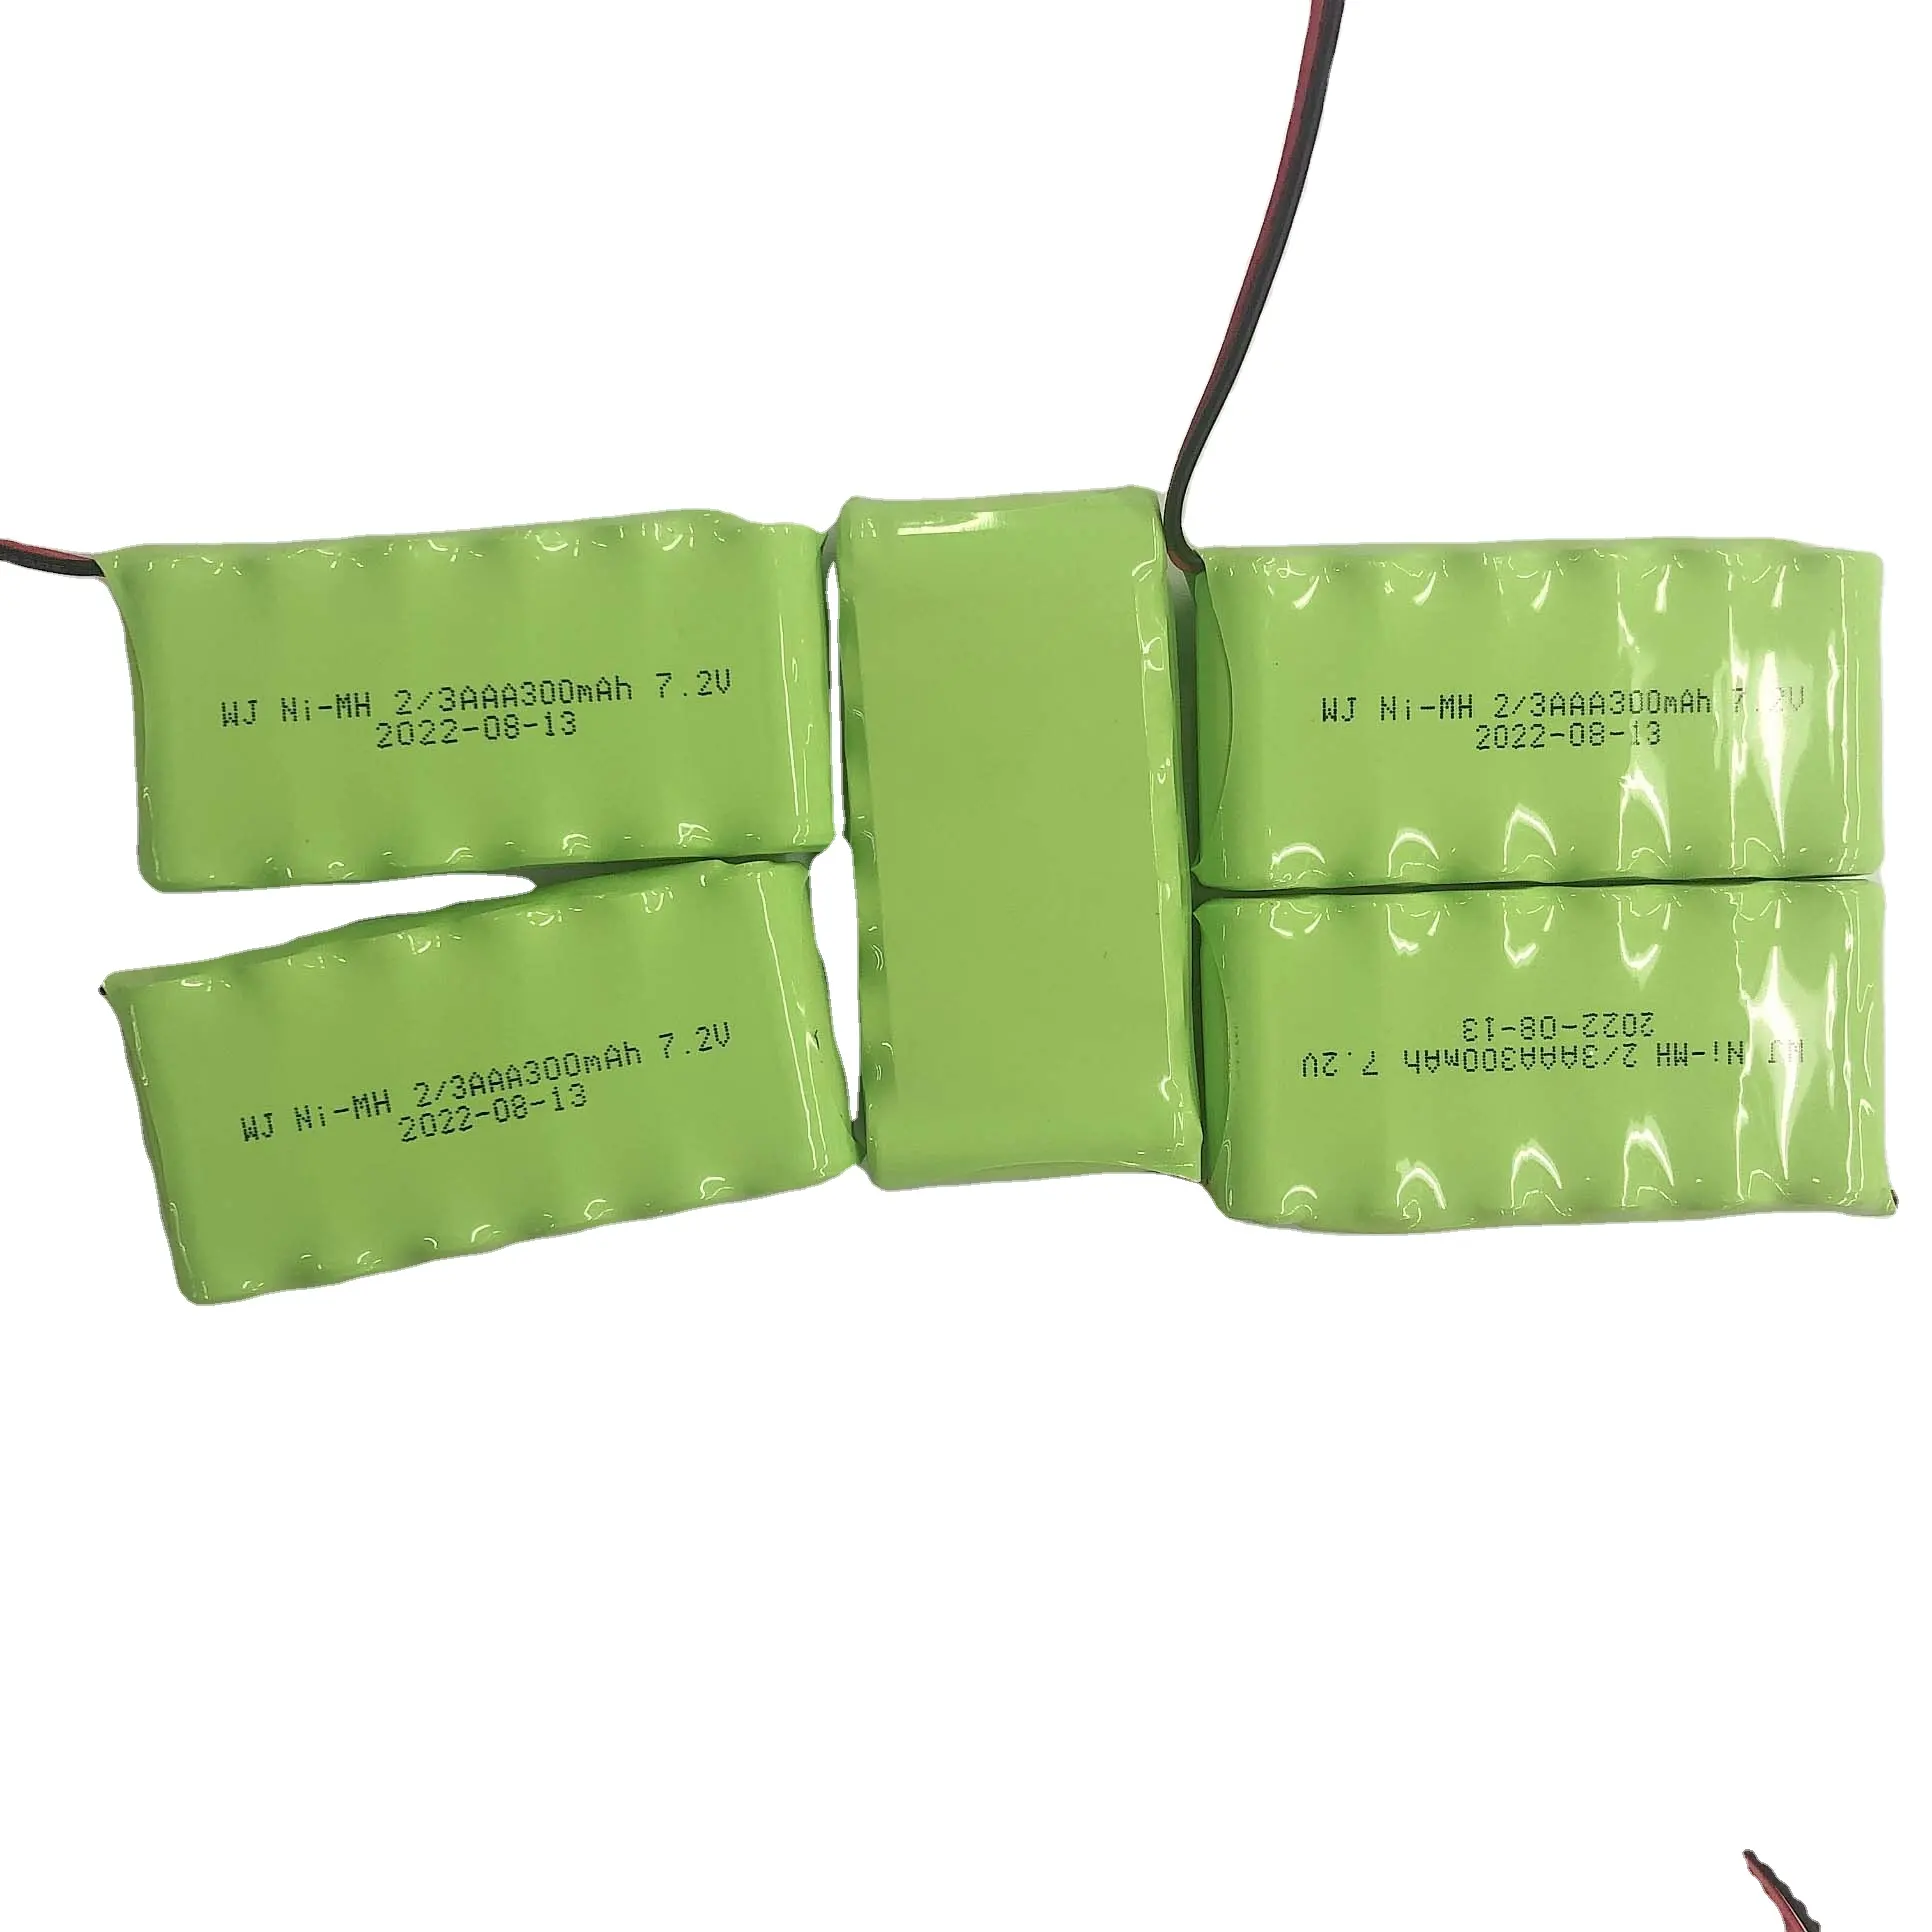 Heißer Verkauf niedriger Preis 1,2 V Nicht-Memory-Effekt NiMH-Akku AA AAA SC C D Typ NiMH-Batterie grün und umwelt freundlich